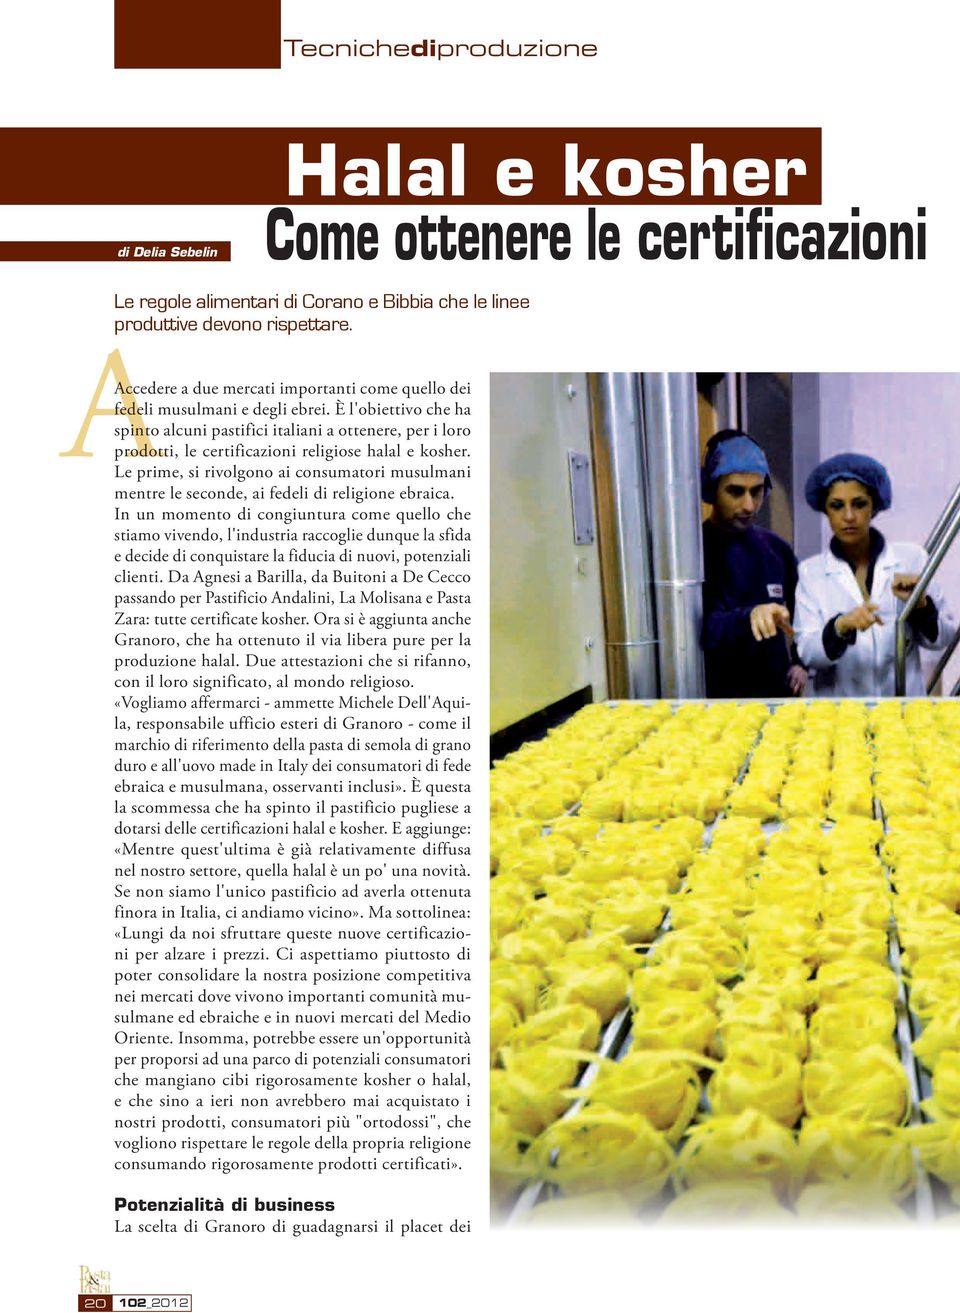 È l'obiettivo che ha spinto alcuni pastifici italiani a ottenere, per i loro prodotti, le certificazioni religiose halal e kosher.